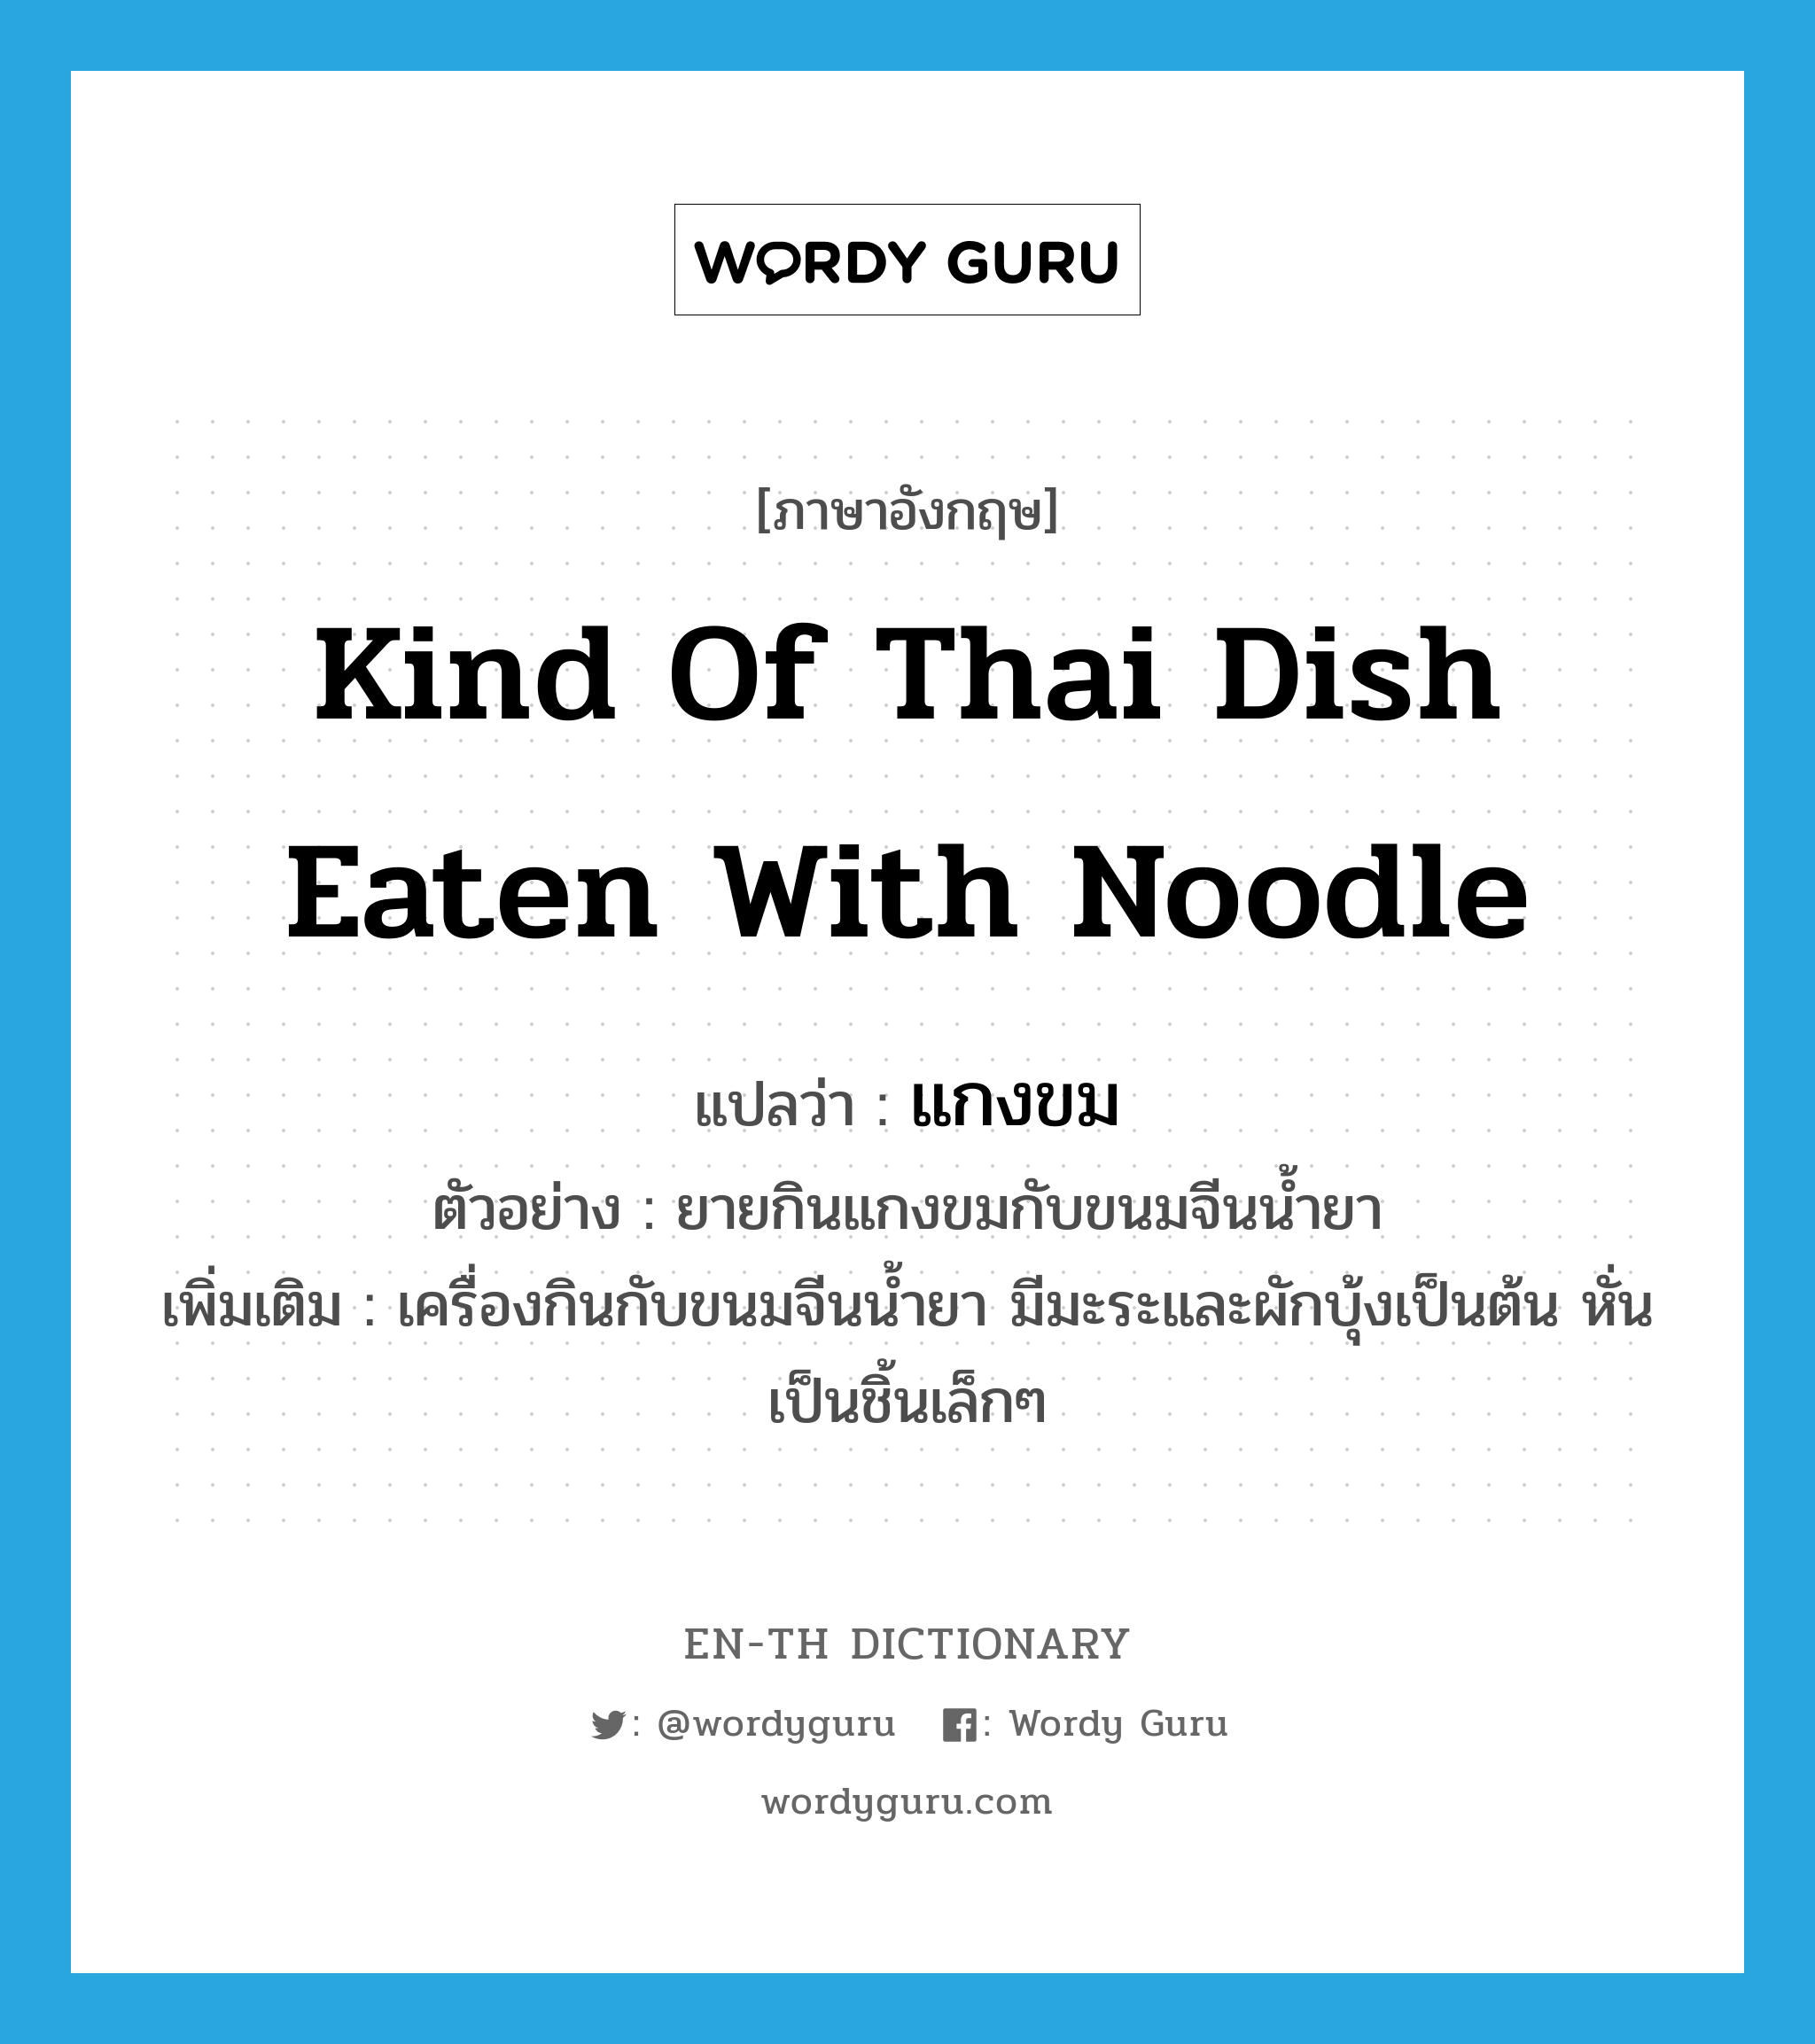 kind of Thai dish eaten with noodle แปลว่า?, คำศัพท์ภาษาอังกฤษ kind of Thai dish eaten with noodle แปลว่า แกงขม ประเภท N ตัวอย่าง ยายกินแกงขมกับขนมจีนน้ำยา เพิ่มเติม เครื่องกินกับขนมจีนน้ำยา มีมะระและผักบุ้งเป็นต้น หั่นเป็นชิ้นเล็กๆ หมวด N